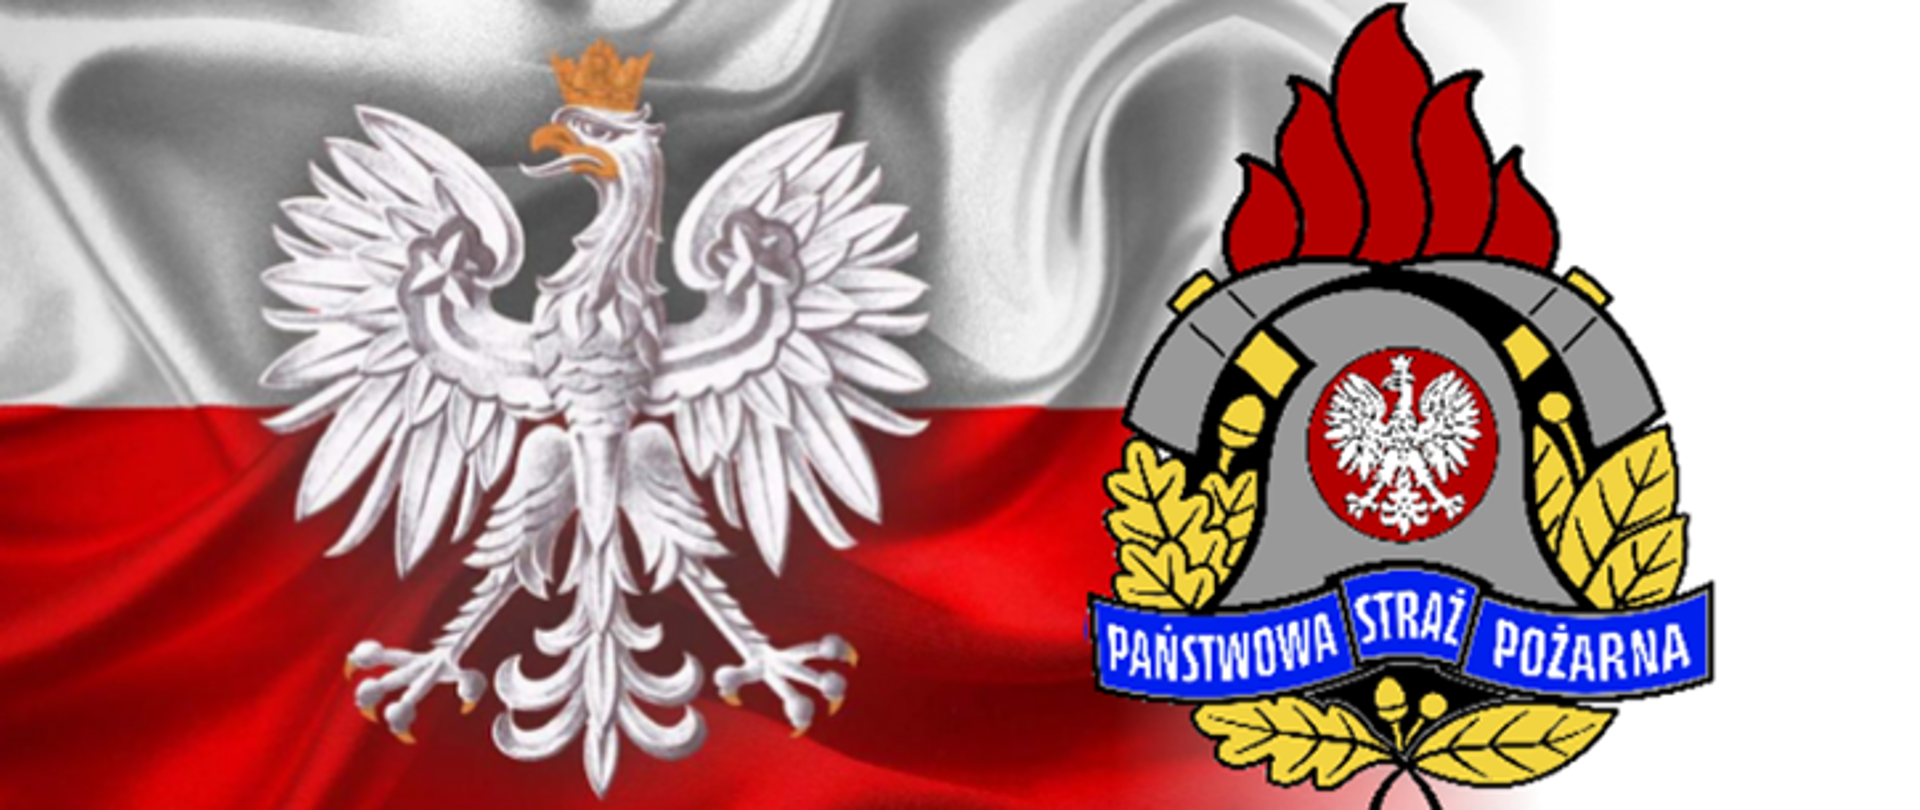 flaga polski na której jest orzeł, obok logo państwowej straży pożarnej